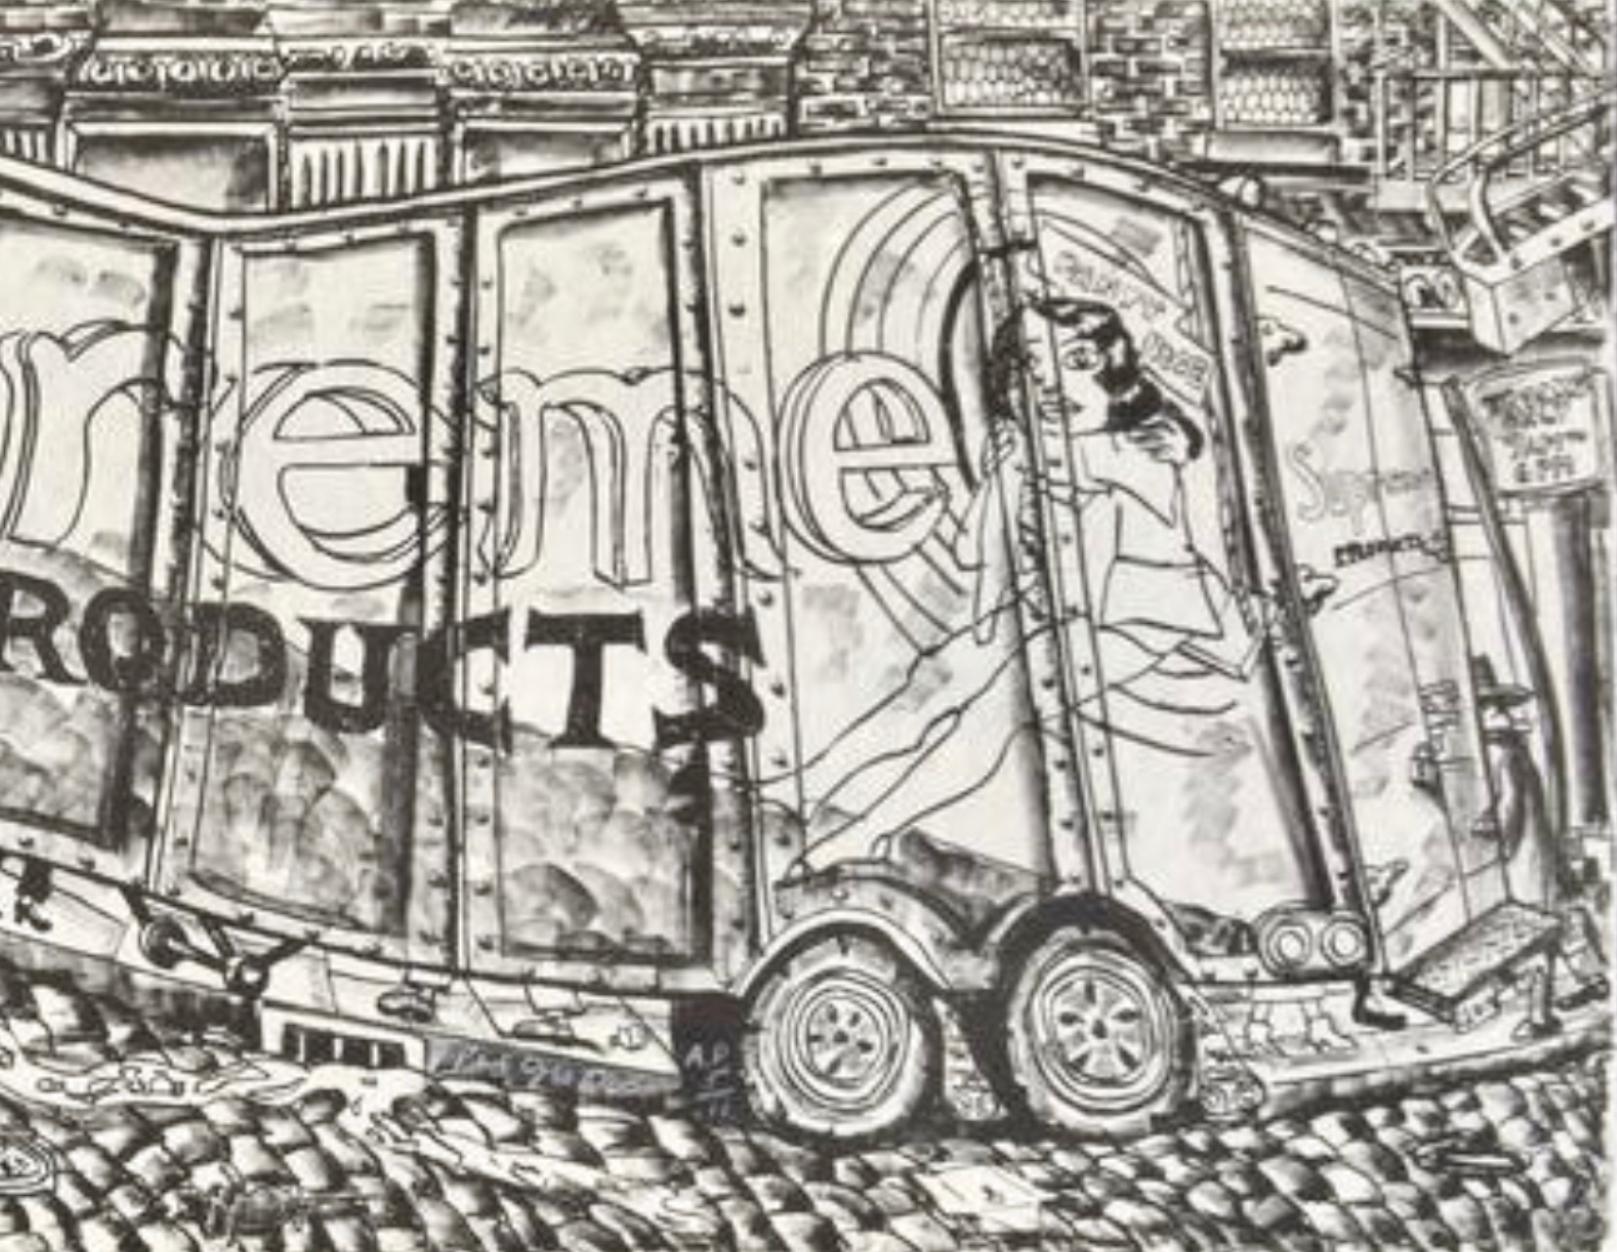 Artistics : Red Grooms (1937)
Titre : Camion I (VEL 105 ; Knestrick 77)
Année : 1979-1980
Support : Lithographie, sérigraphie, impressions au tampon sur papier Arches
Édition : 36, plus 11 épreuves d'artiste
Taille : 24.25 x 62.25 pouces
Condit :